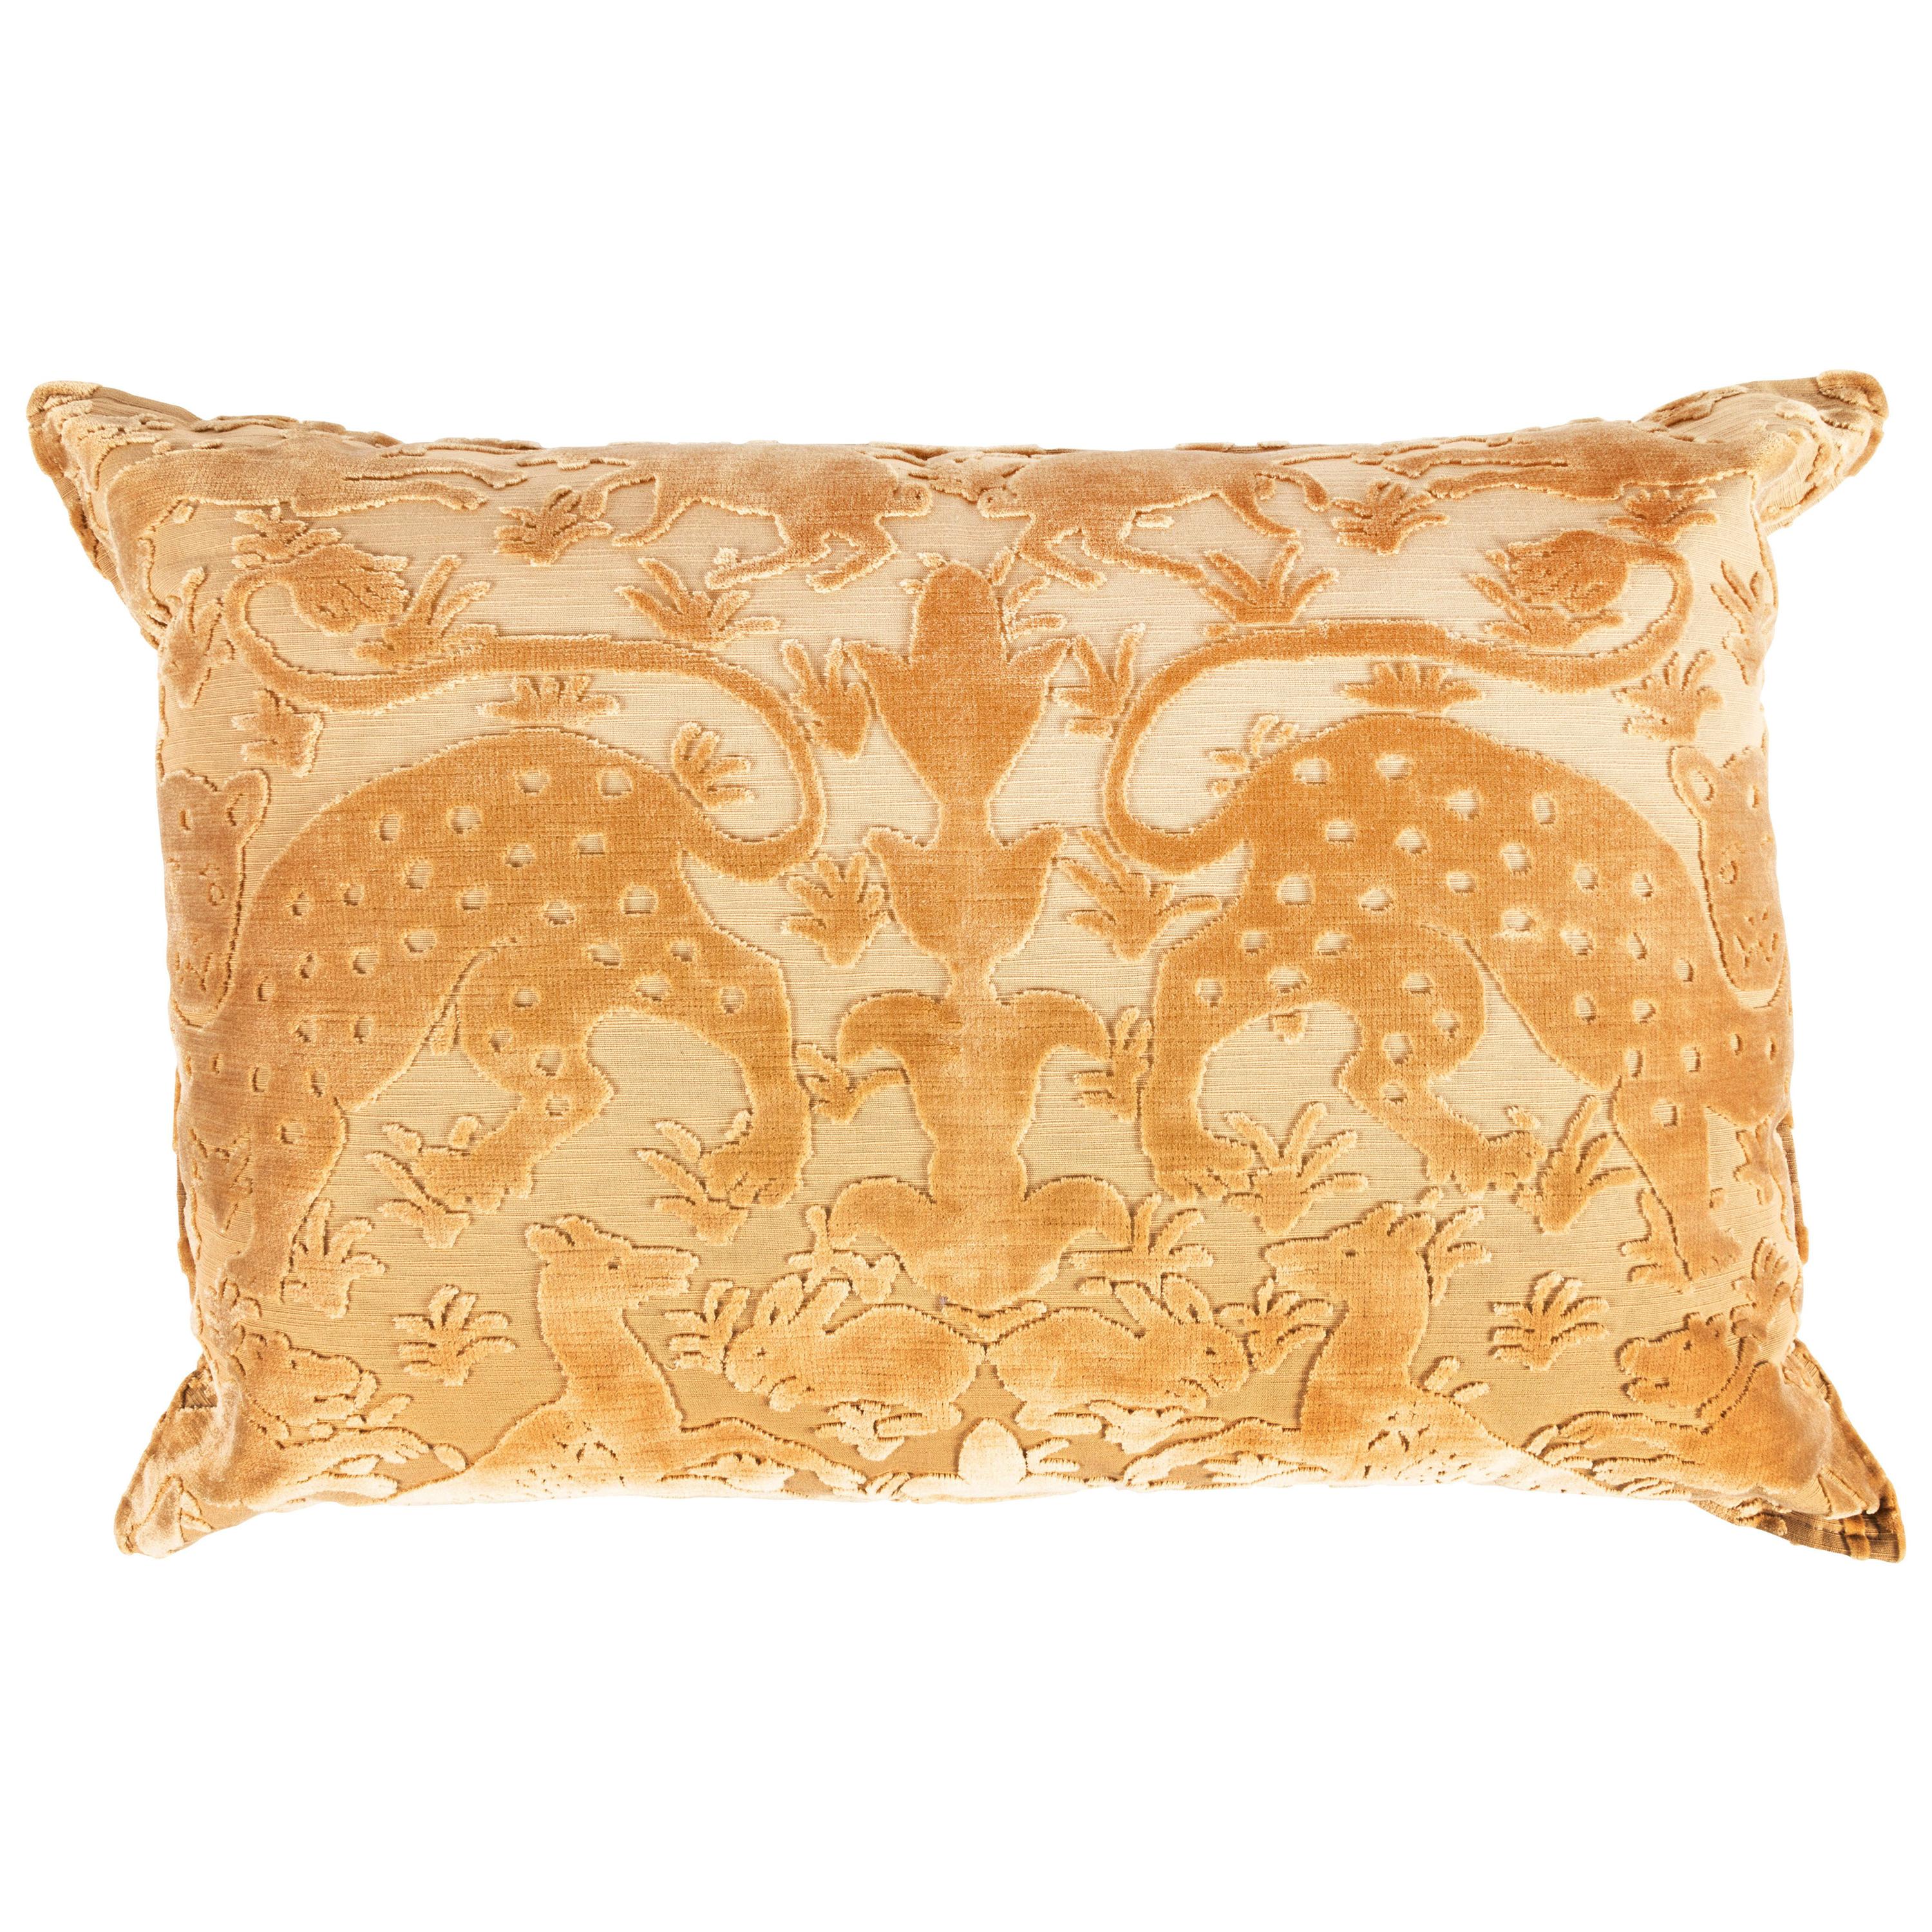 Bevilacqua Animal Motif 'Bestiario' Handcut Gold Velvet Pillow